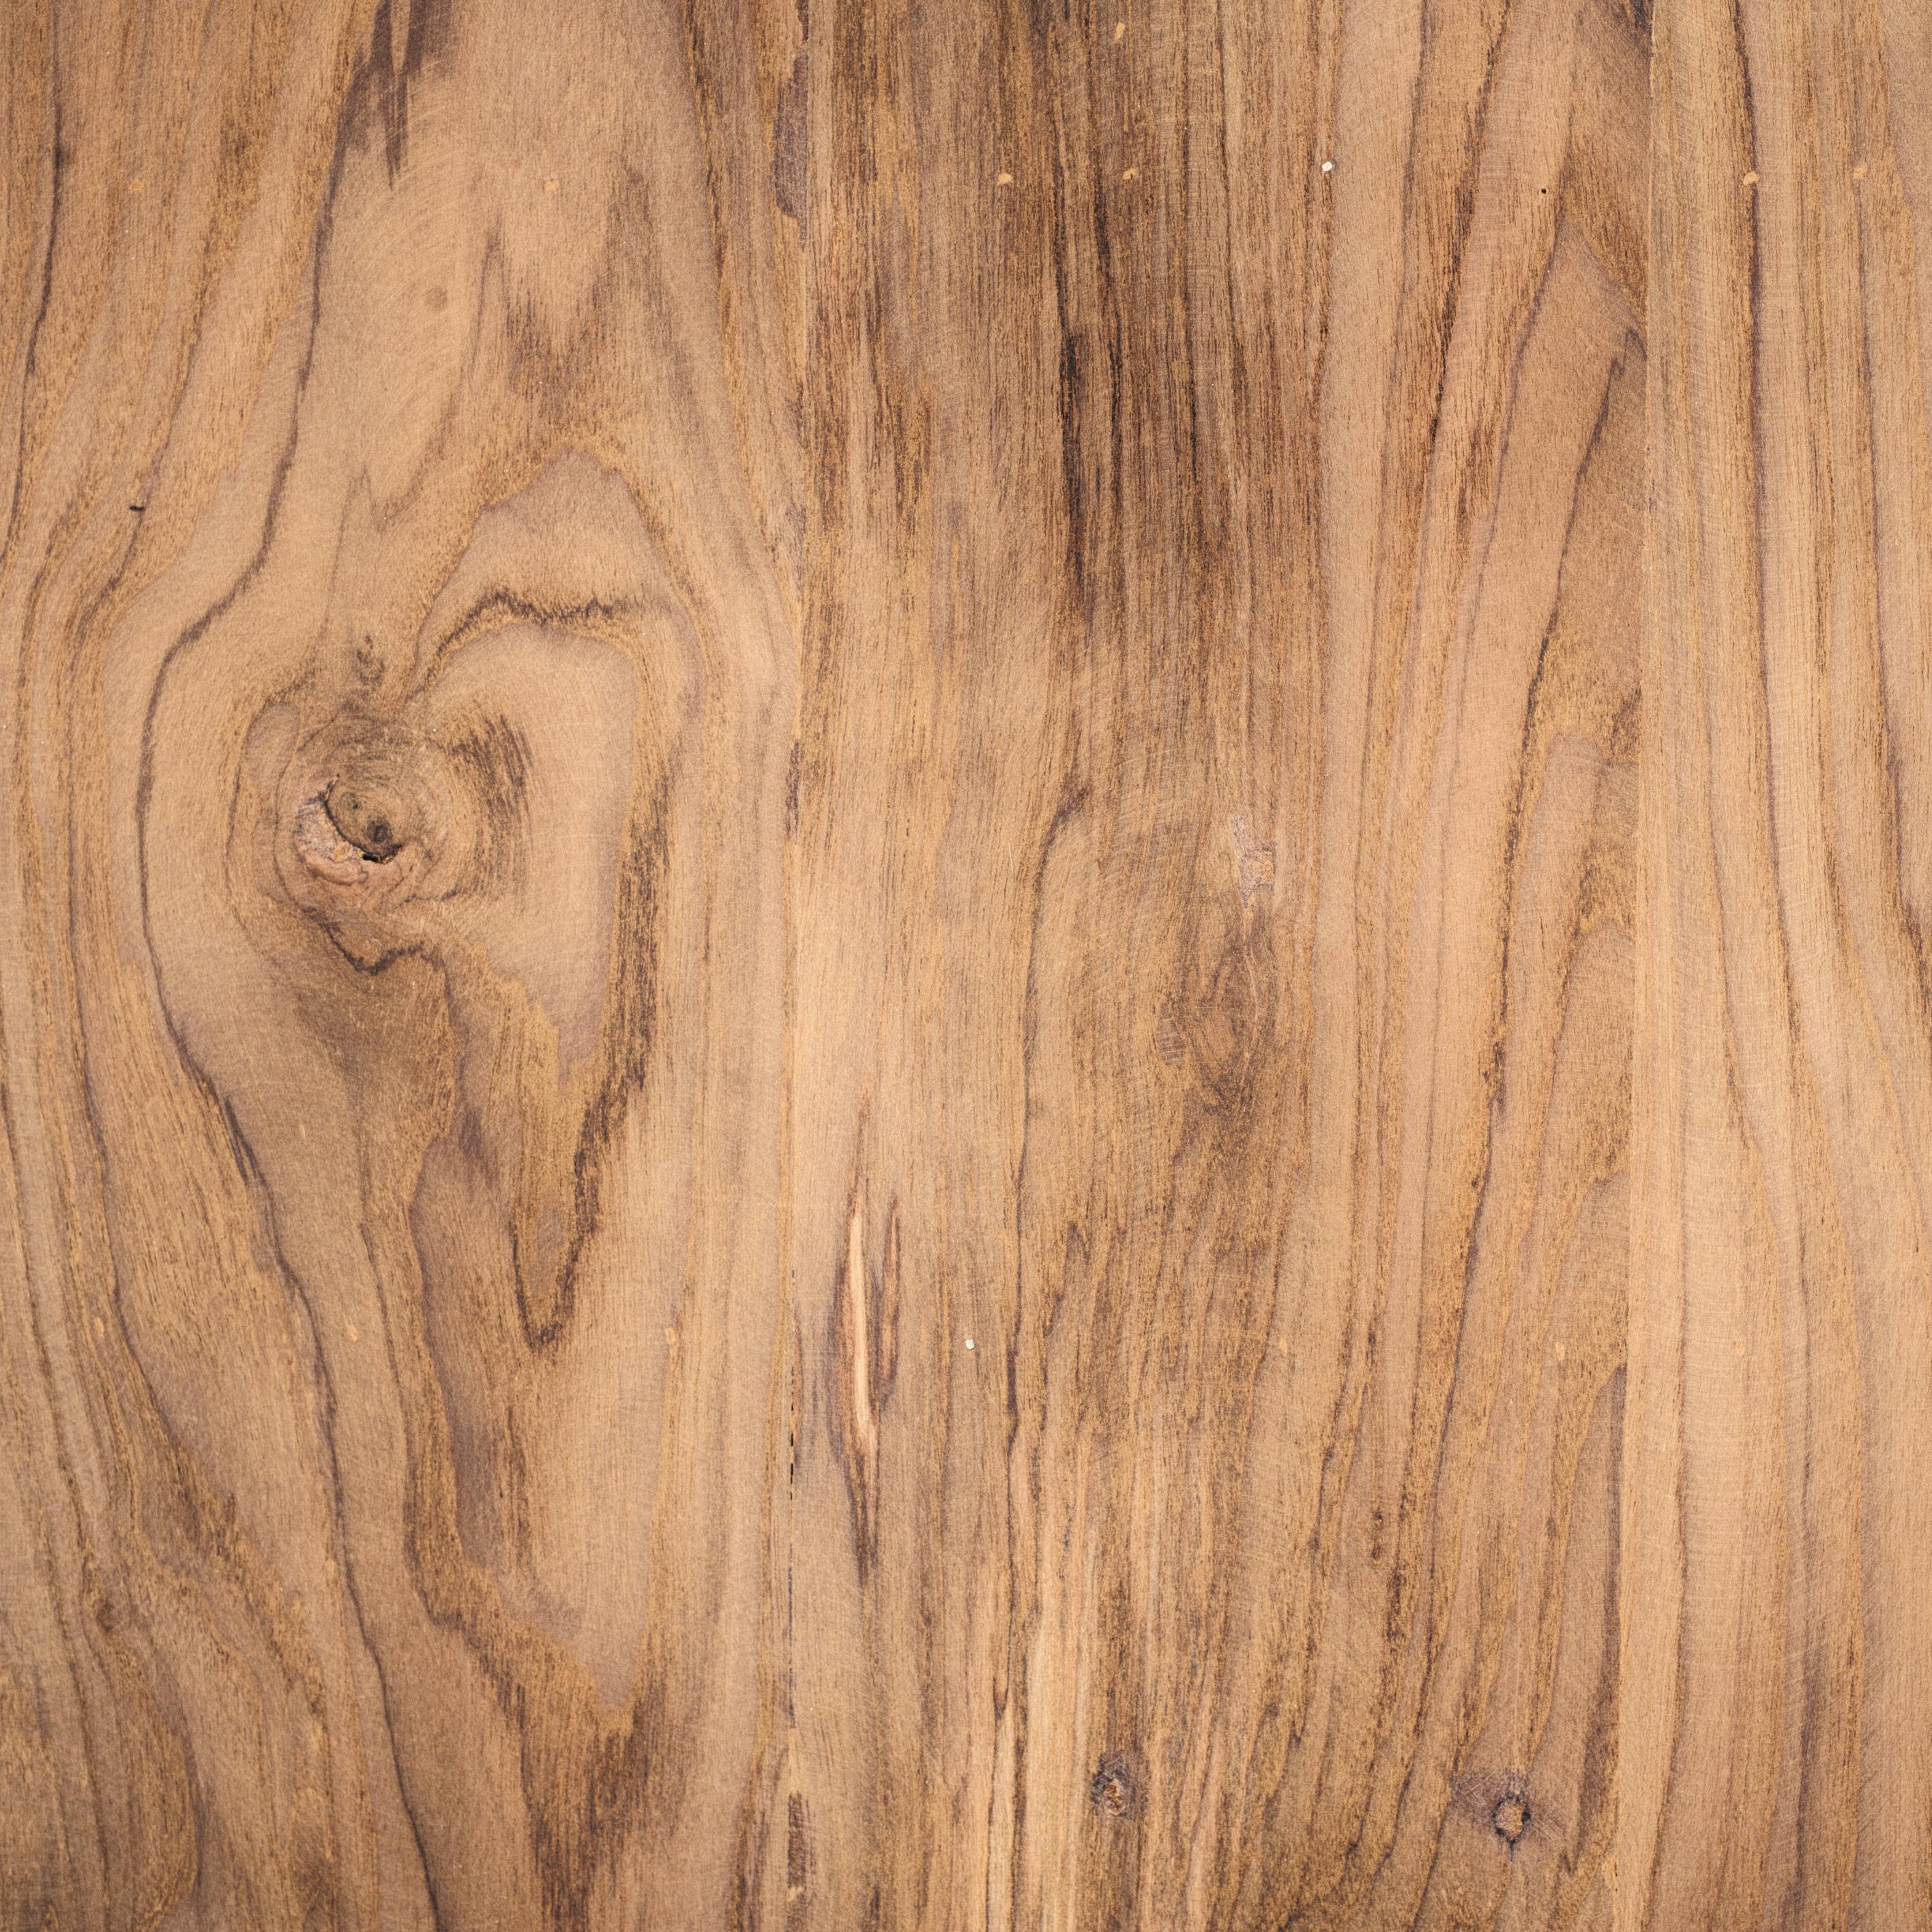 Cảm nhận sự độc đáo và tự nhiên tuyệt vời của gỗ với bức ảnh nền gỗ miễn phí. Hãy tận hưởng vẻ đẹp đầy mê hoặc của loại vật liệu này bằng cách xem ngay hình ảnh liên quan.